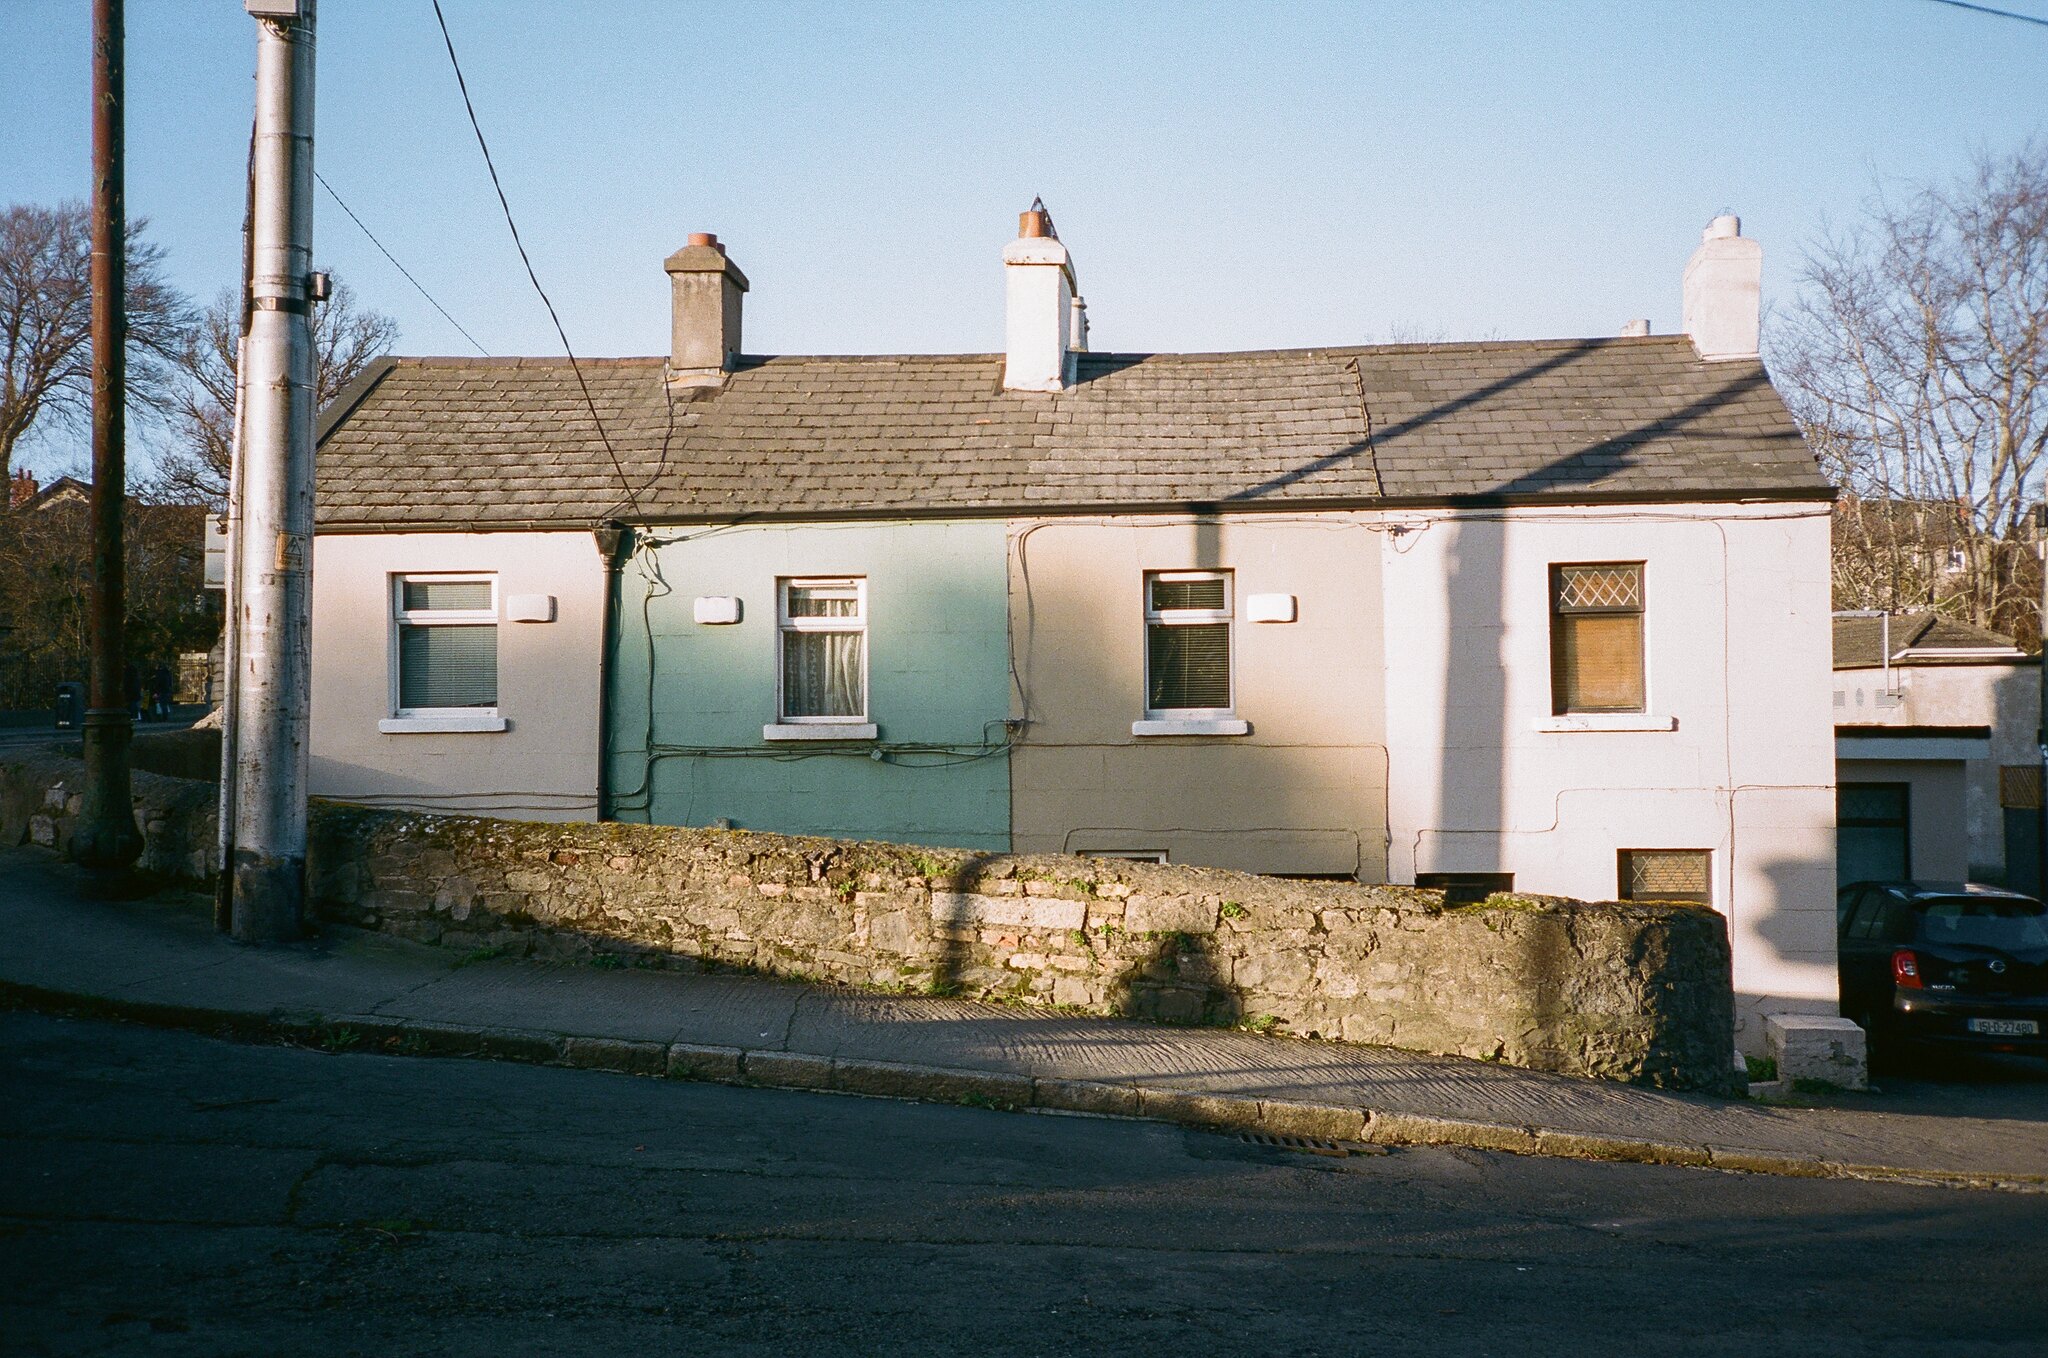 Dublin's houses